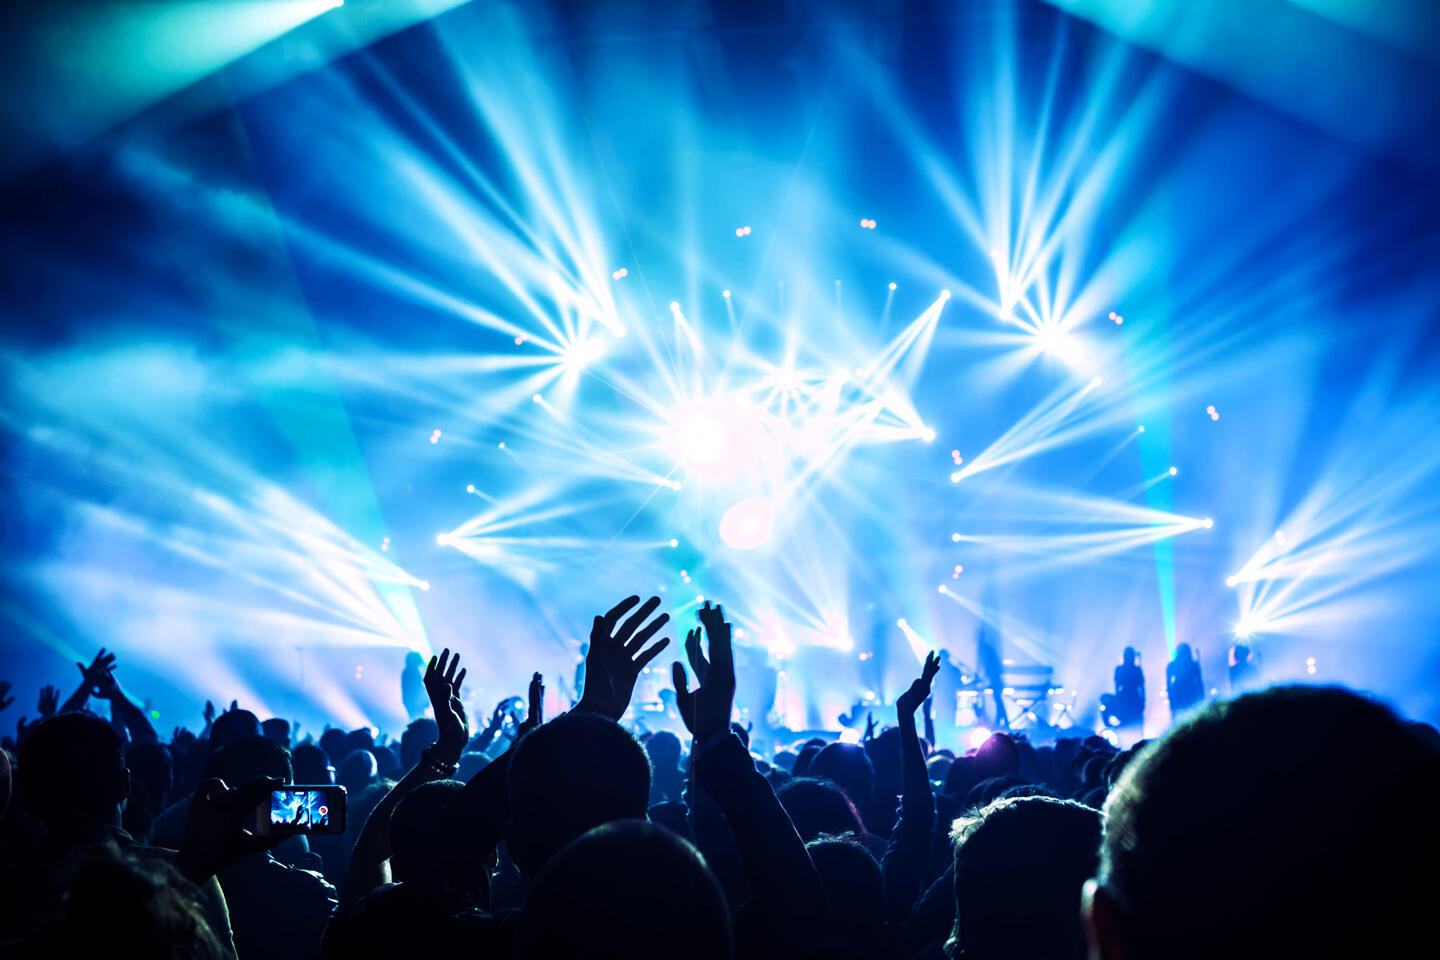 Público extasiado en un concierto de I Love Techno Europe en Montpellier, luces de escenario vibrantes y dinámicas capturando la atmósfera electrizante del evento.